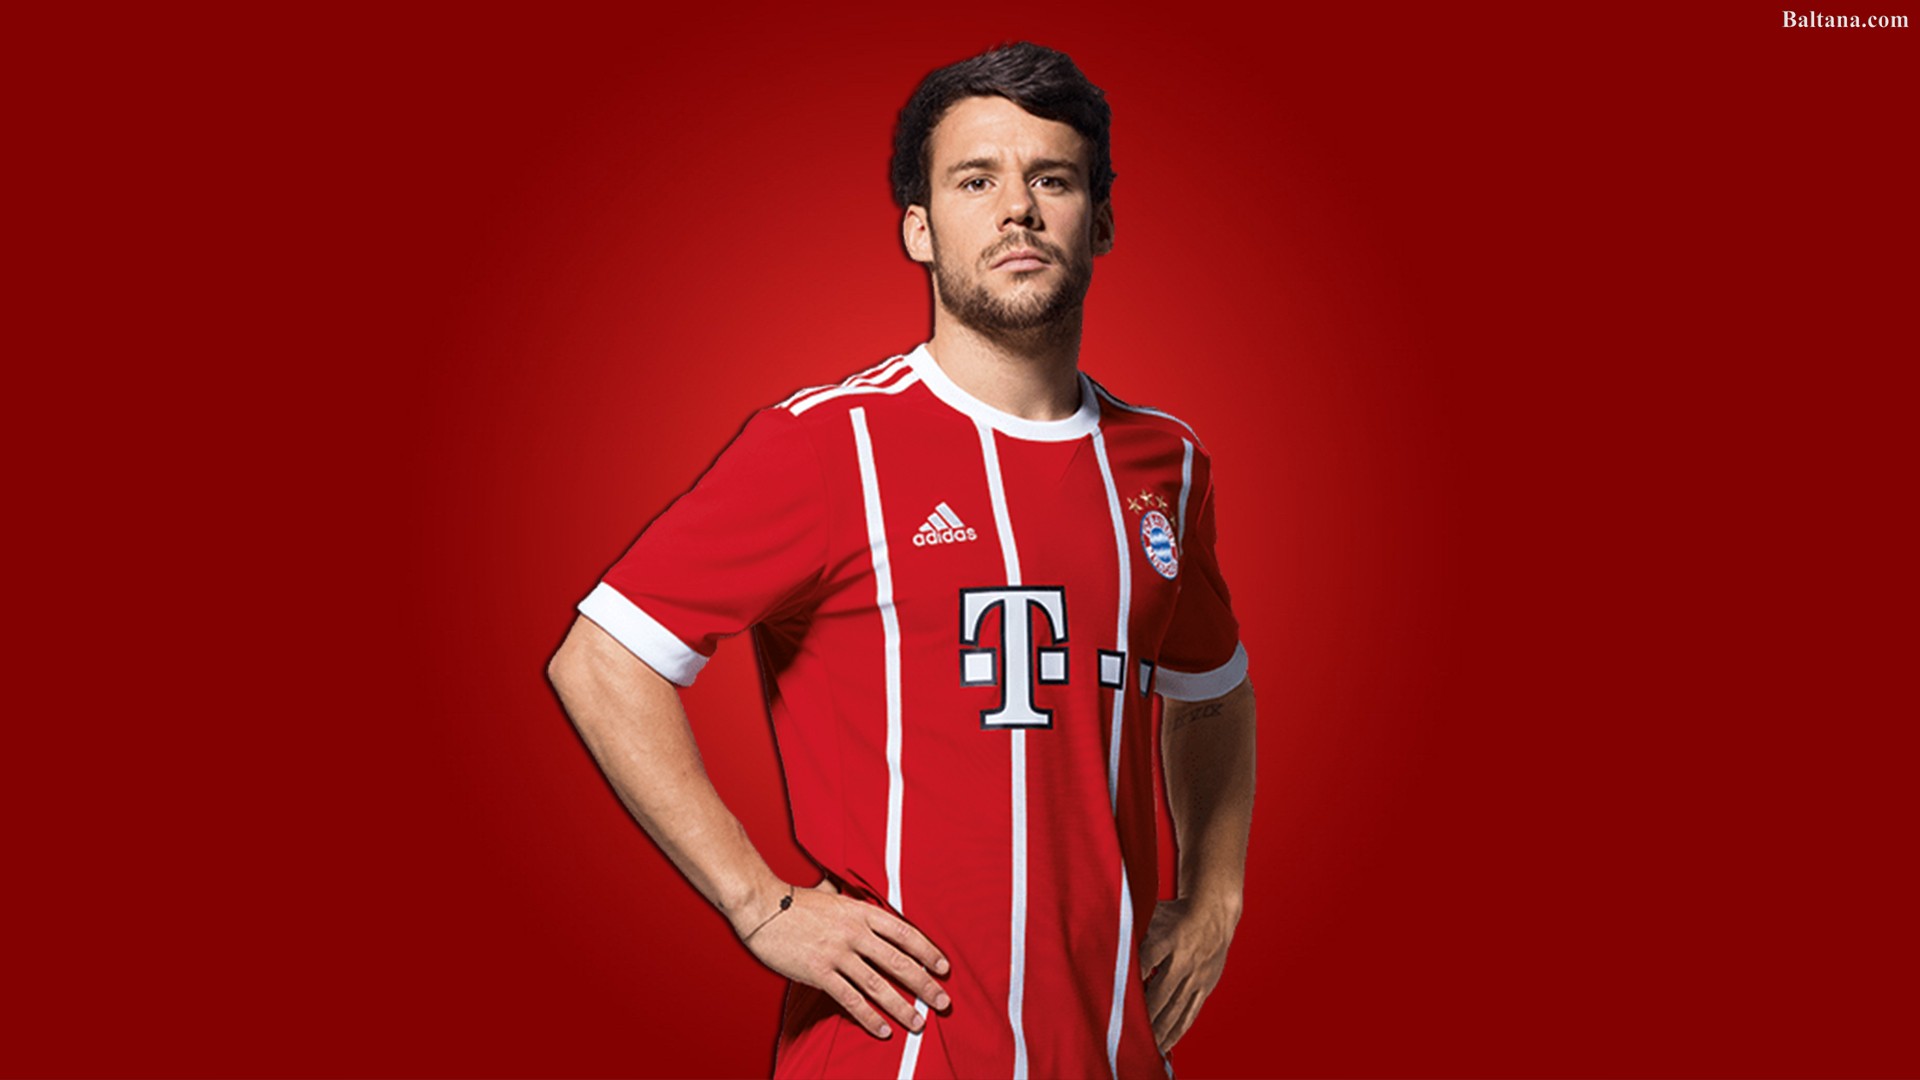 FC Bayern Munich HD Wallpapers 33933 - Baltana